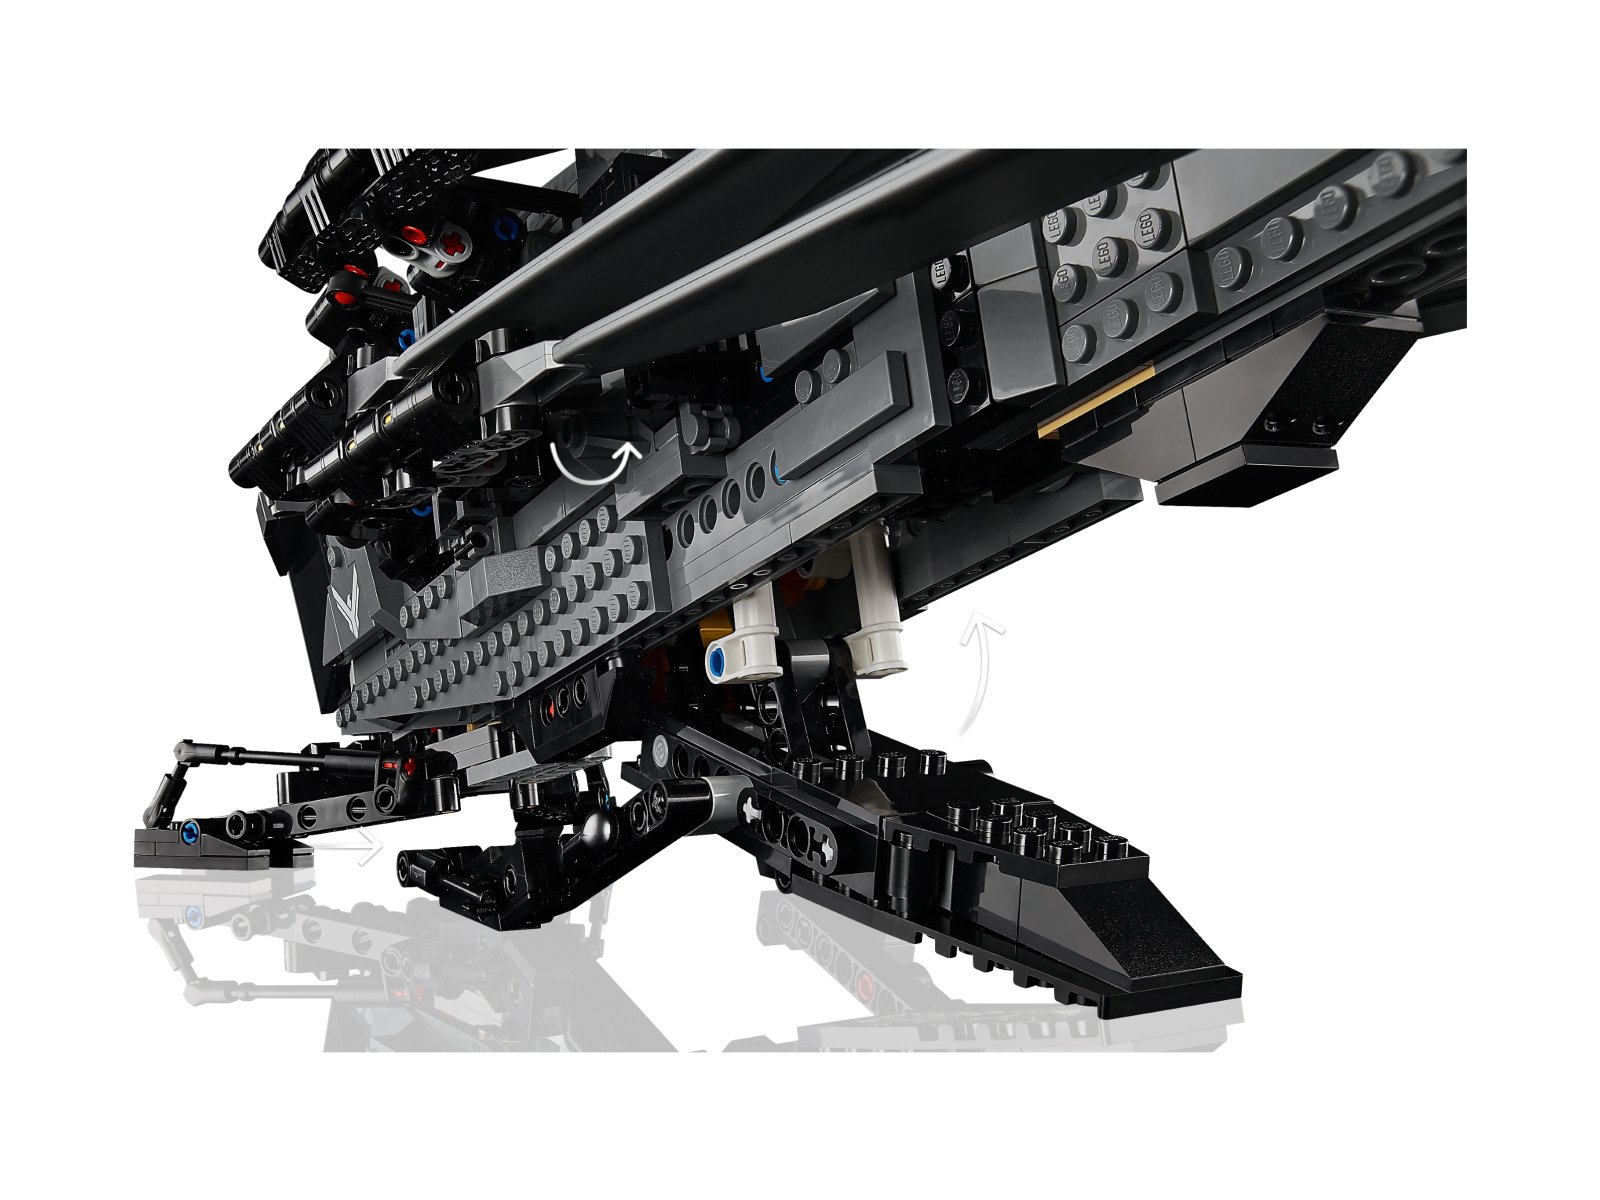 LEGO 10327 ICONS Diuna — Atreides Royal Ornithopter